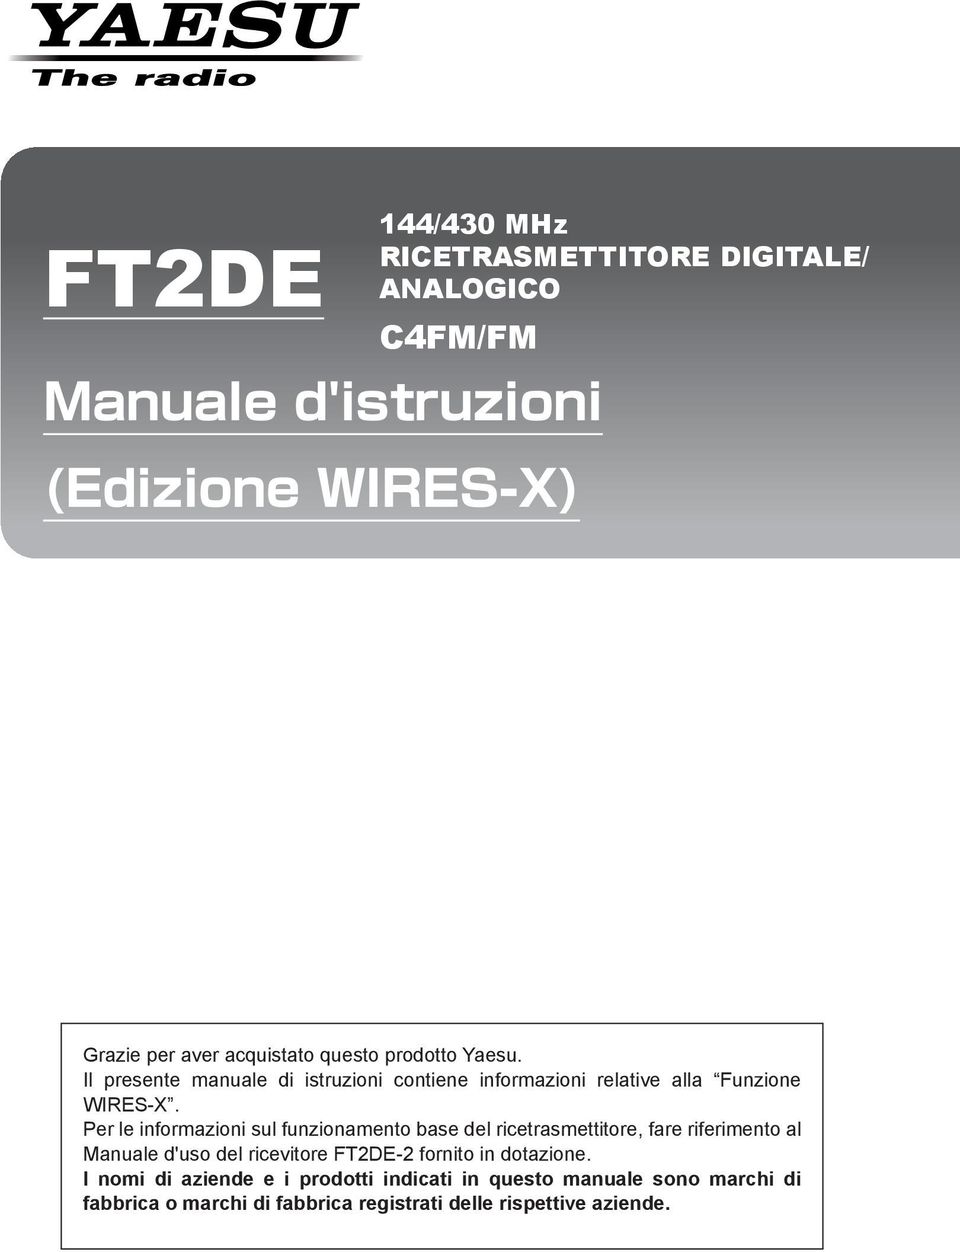 Per le informazioni sul funzionamento base del ricetrasmettitore, fare riferimento al Manuale d'uso del ricevitore FT2DE-2 fornito